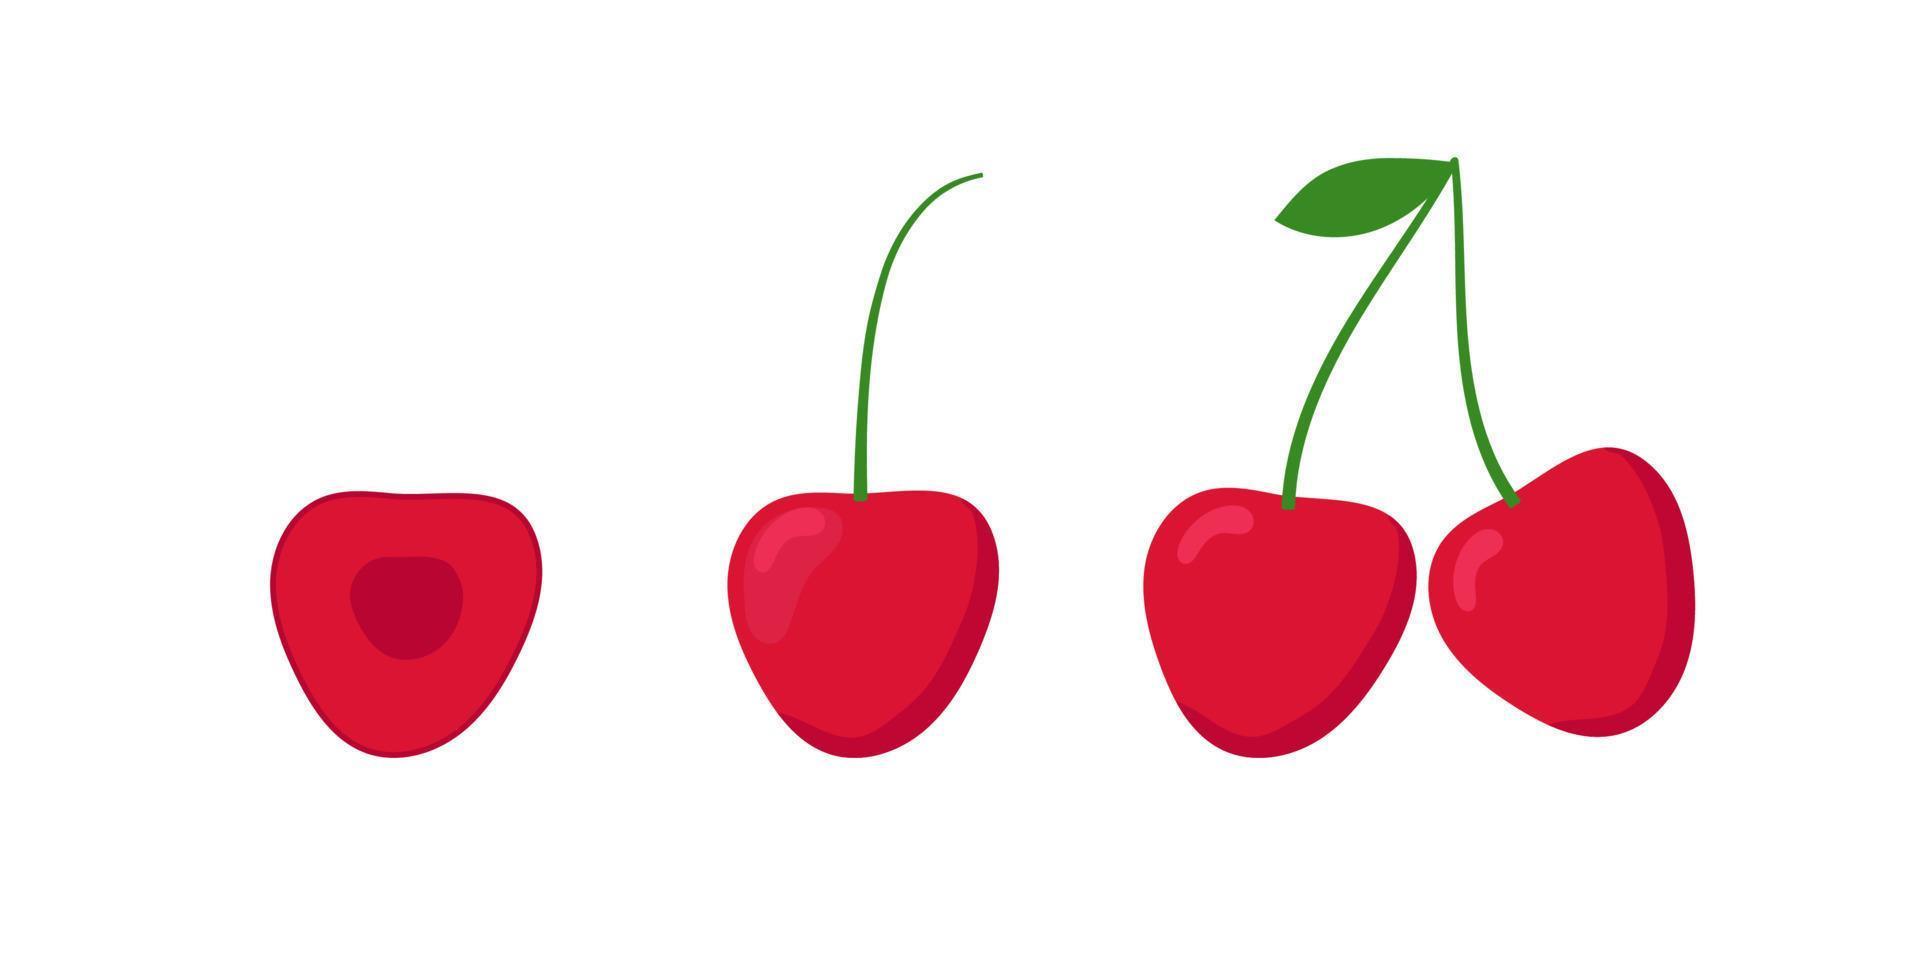 uppsättning röda körsbär med gröna blad. platt design. isolerade vektor illustration